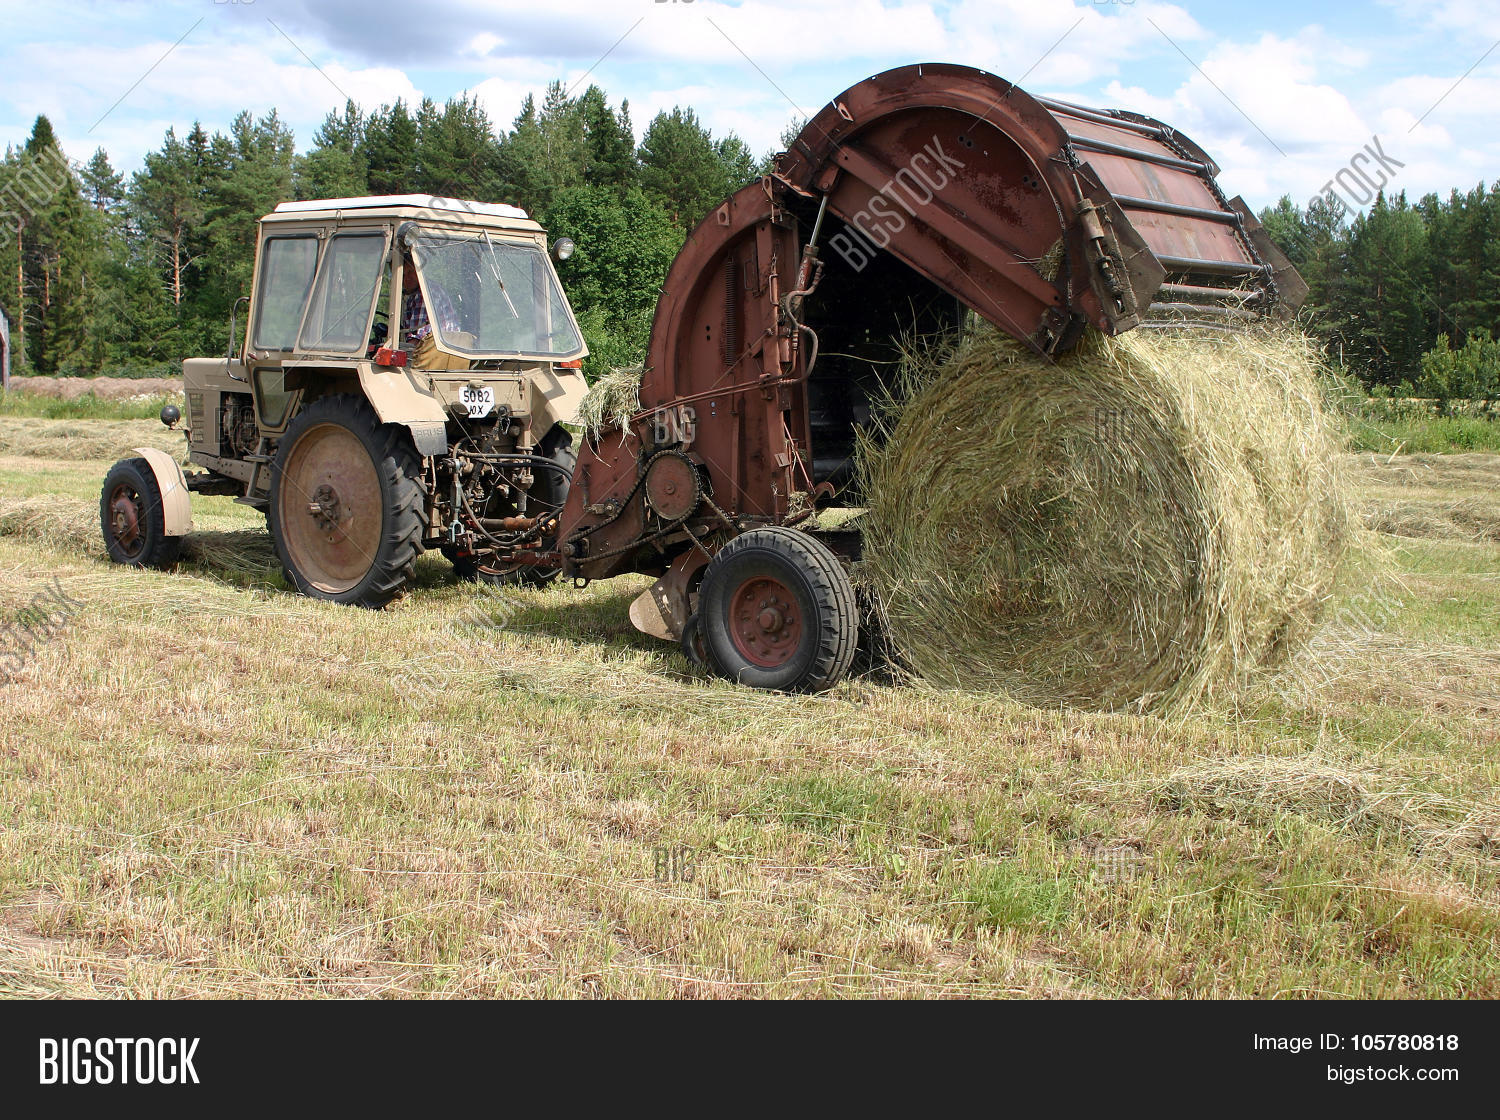 Машина которая косит сено сложное слово 4. Пресс для сена на трактор. Трактор собирает сено. Круглый трактор. Трактор собирает сено в тюки.